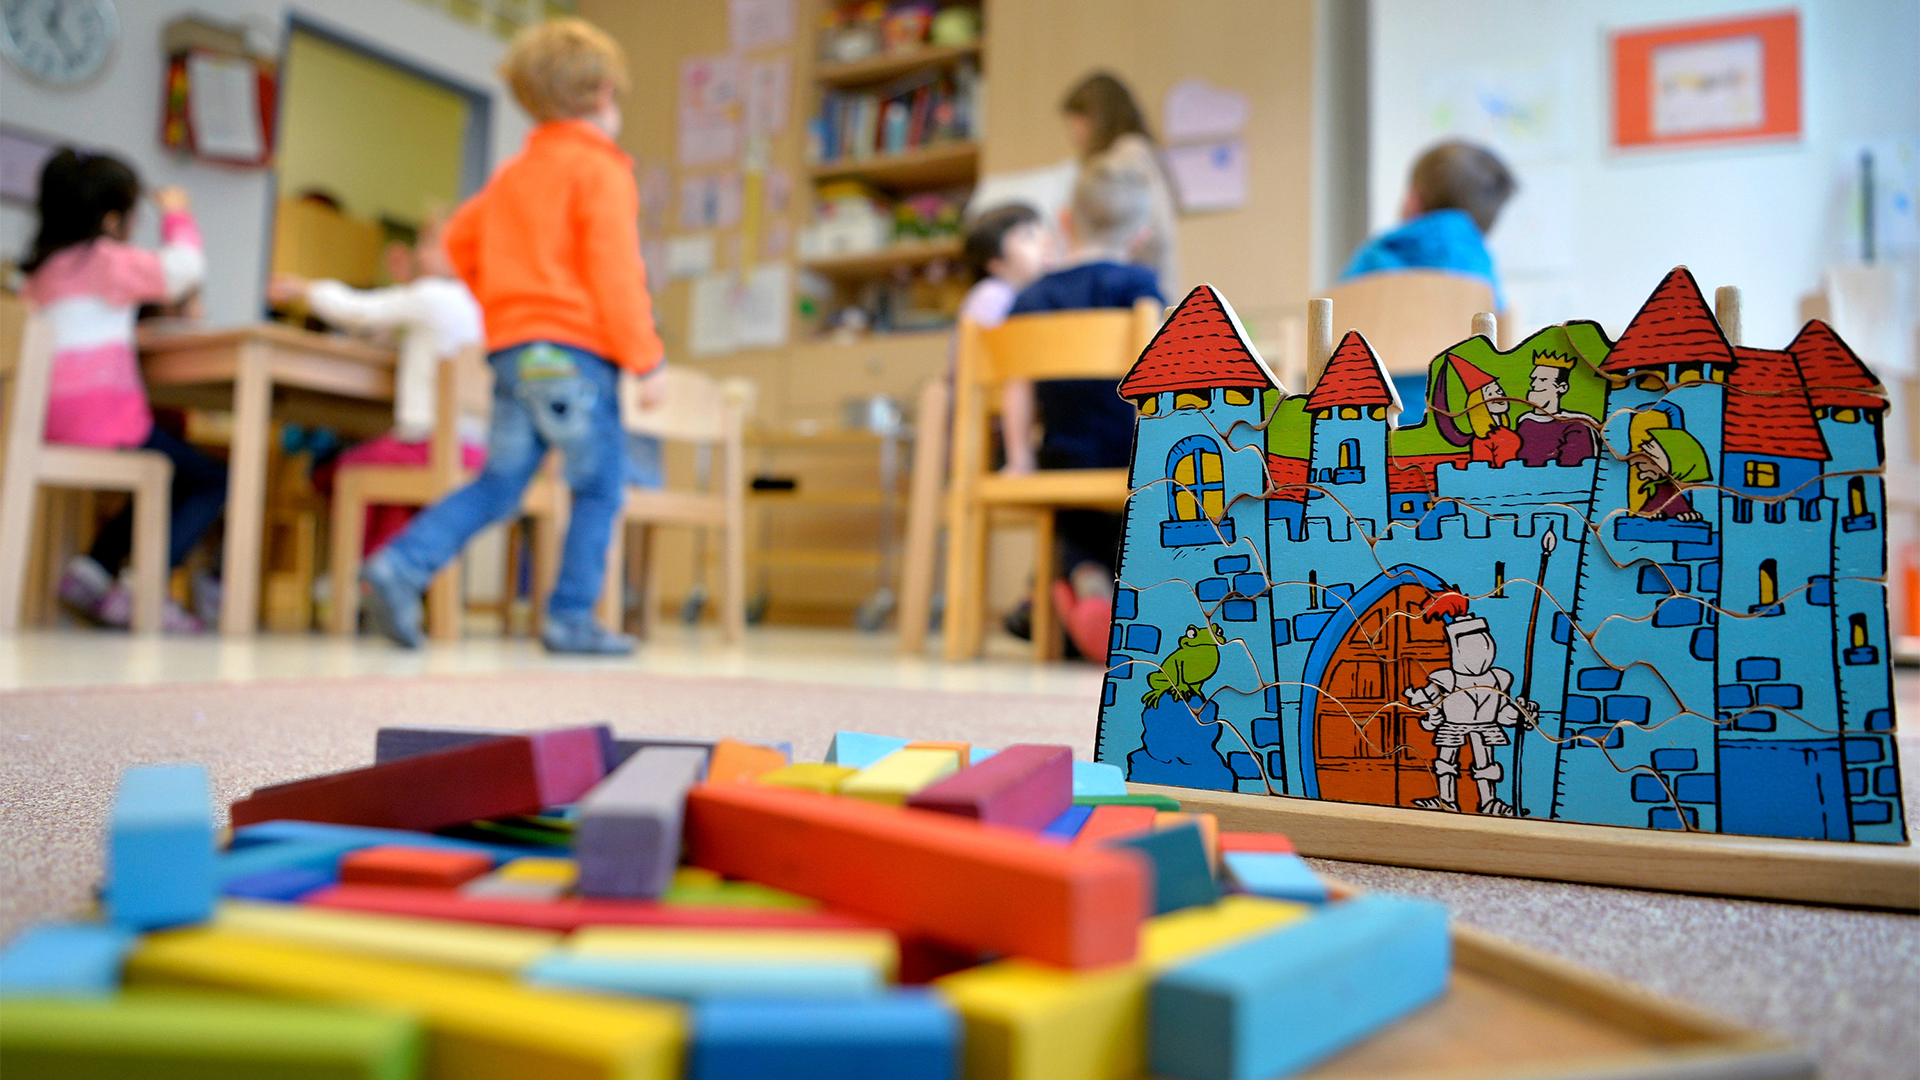 Spielzeug liegt in einer Kindertagesstätte auf dem Boden | Bildquelle: dpa